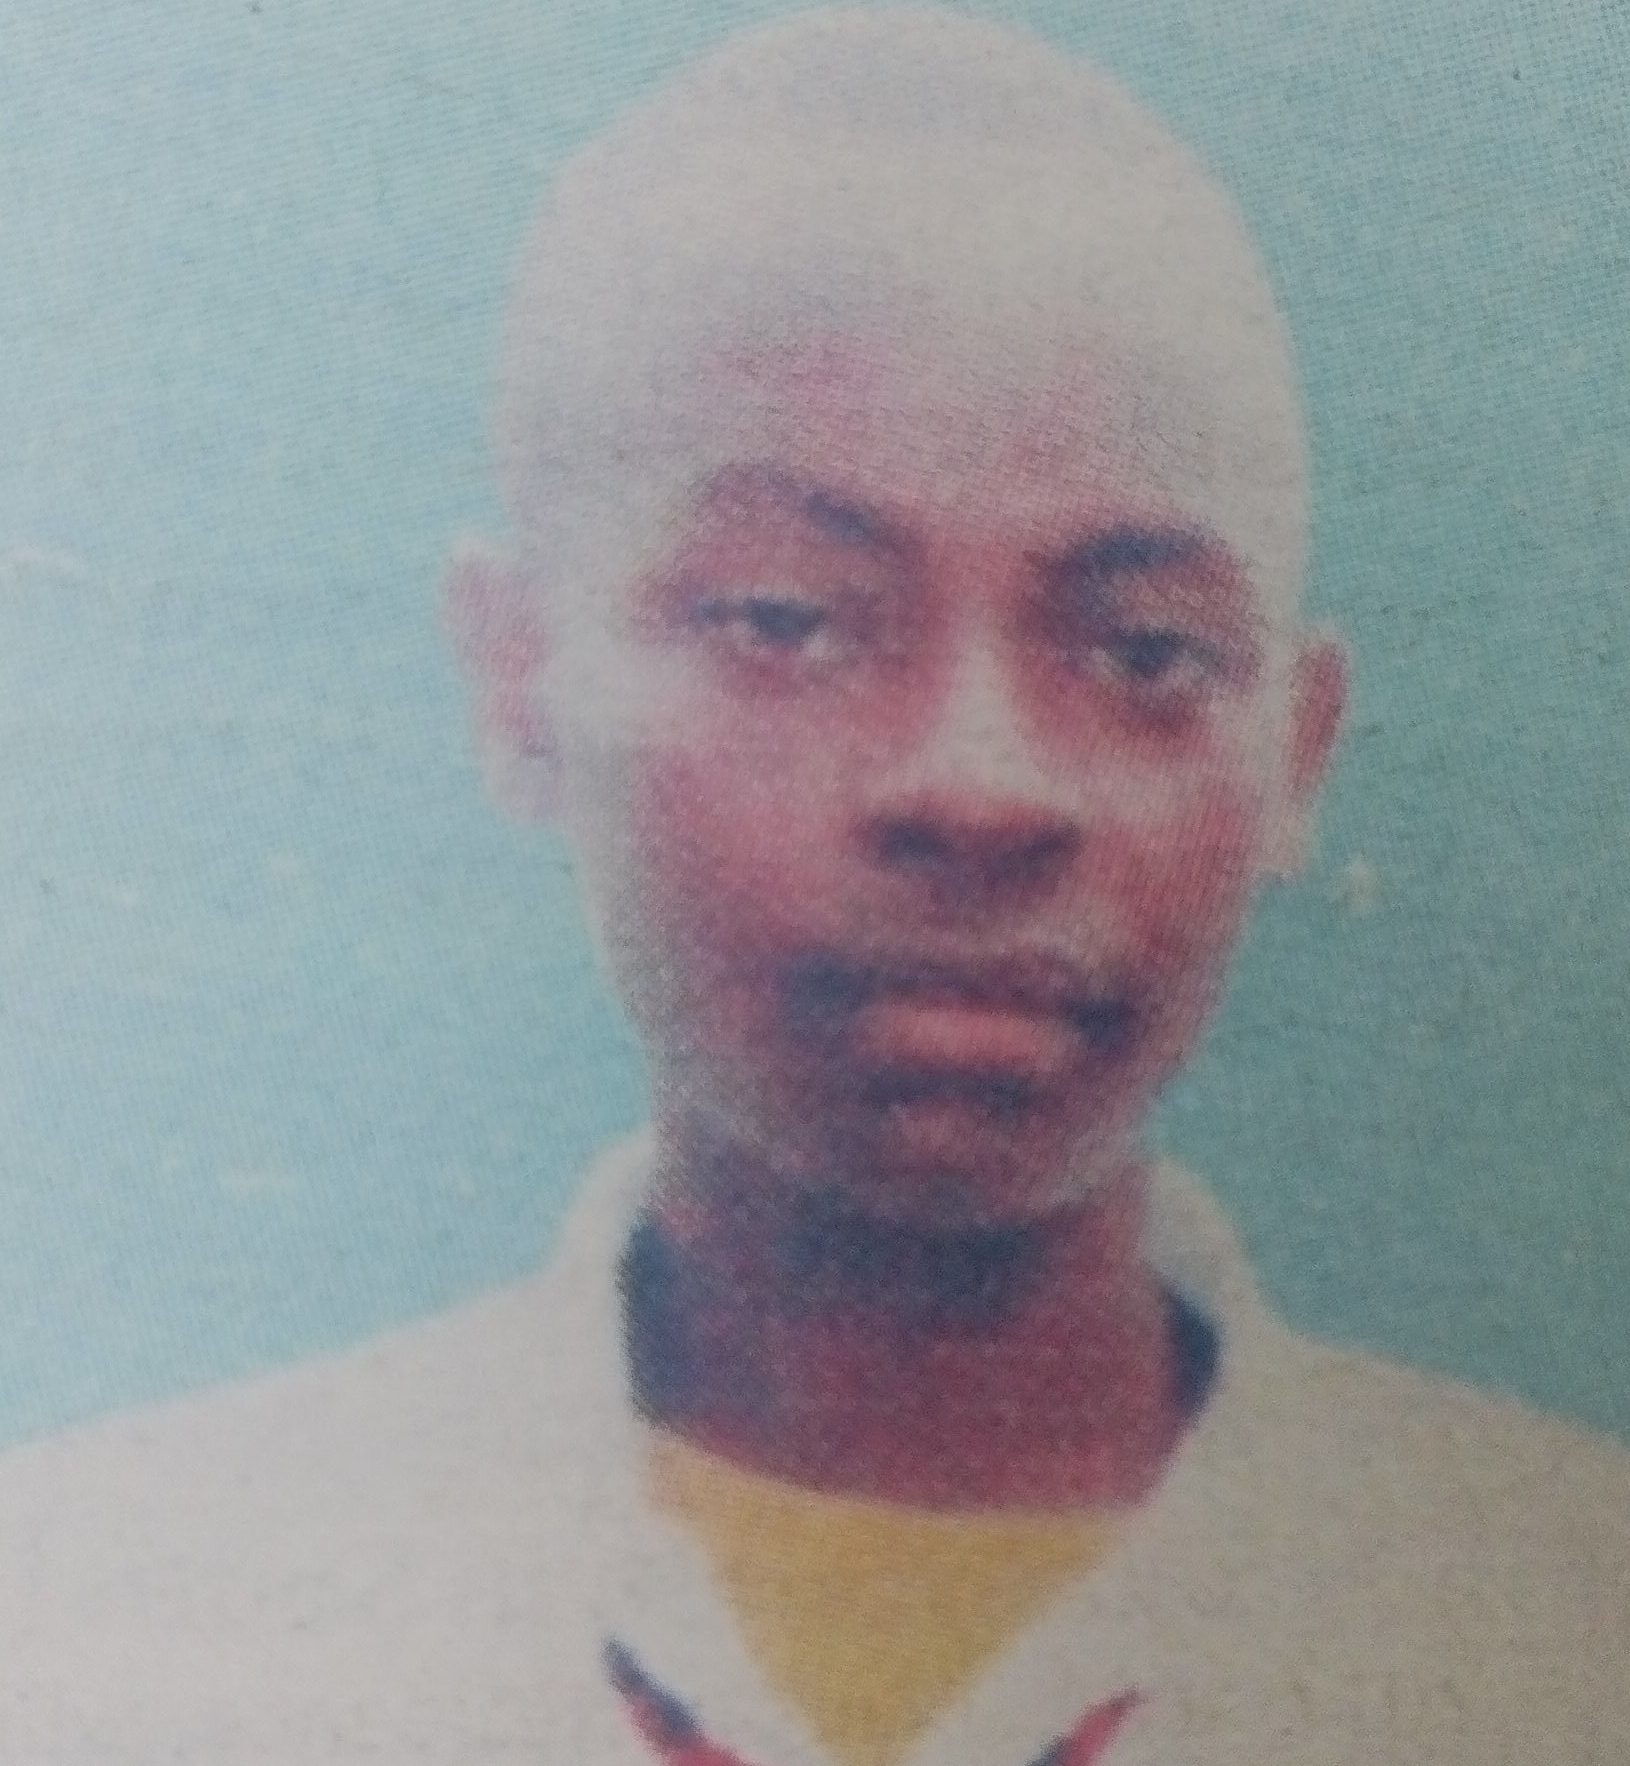 Obituary Image of Samuel Njoroge Wanyaga